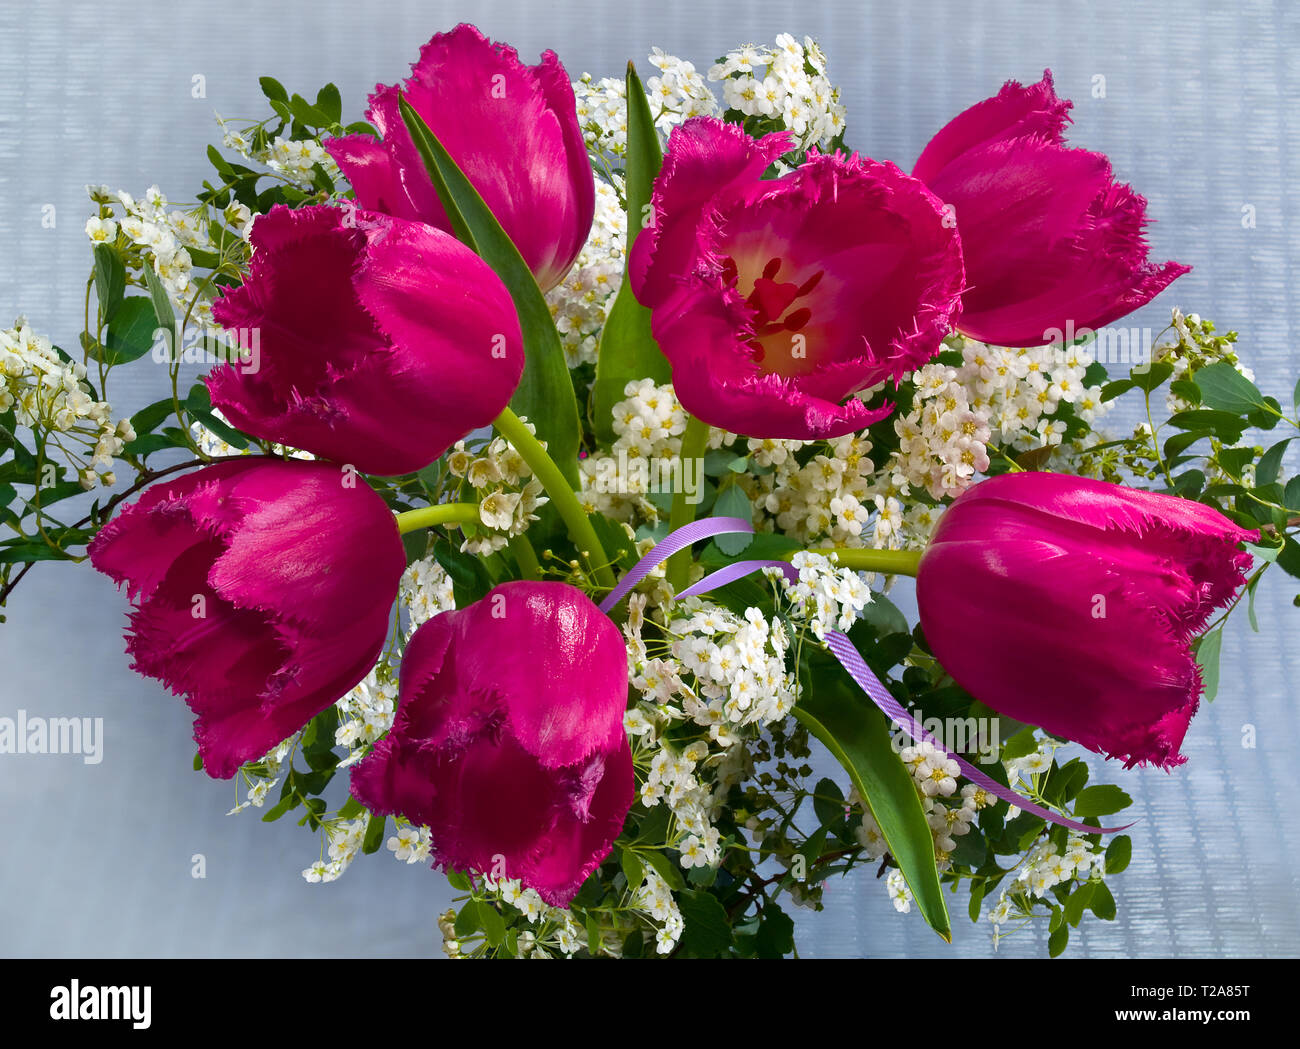 Bouquet de fleurs de tulipes roses et les inflorescences спирея sur fond gris format horizontal. Banque D'Images